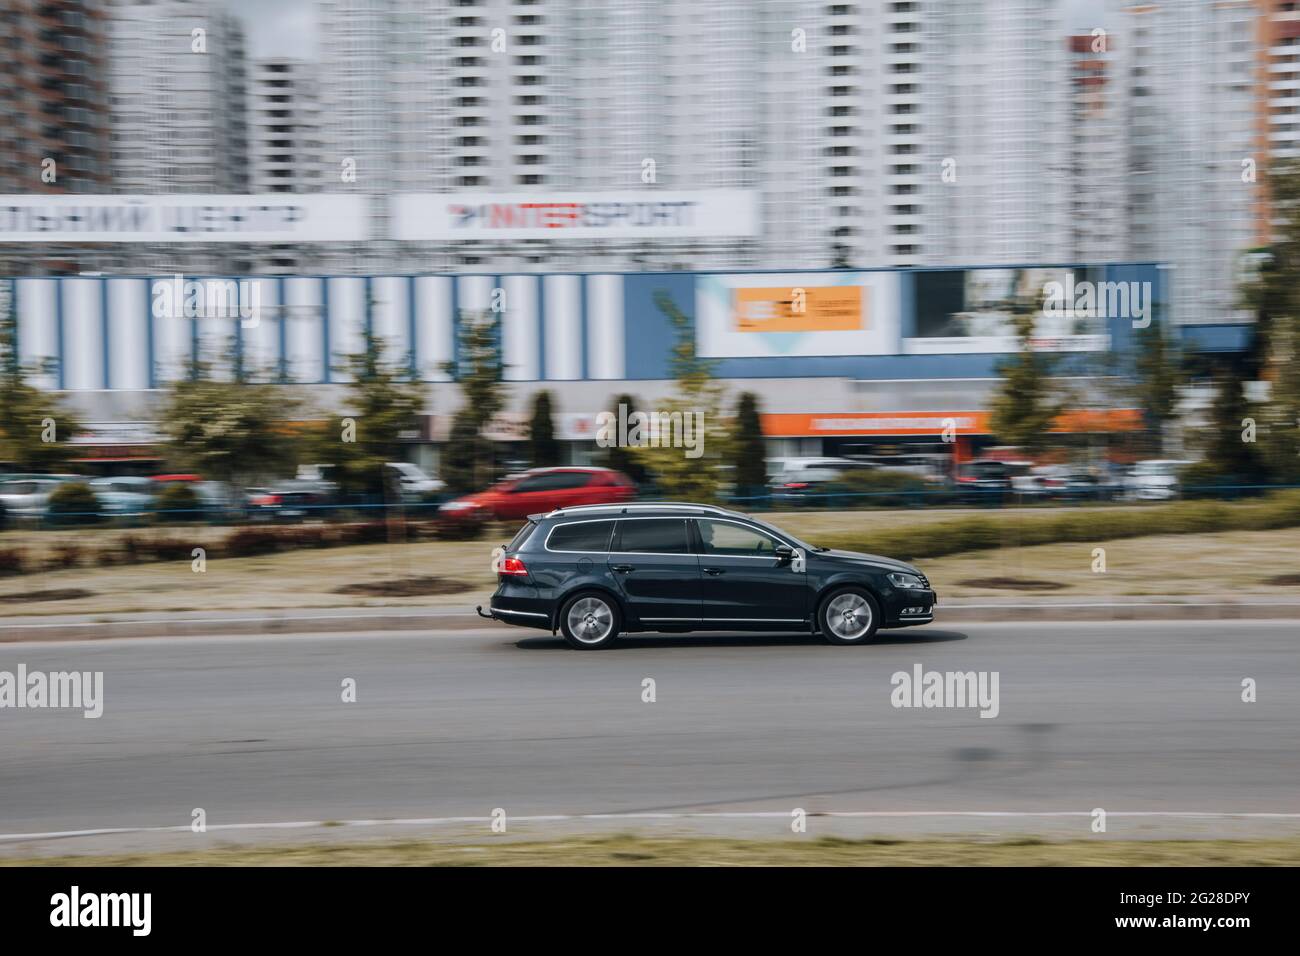 Ucraina, Kiev - 13 maggio 2021: Auto Volkswagen nera in movimento per la strada. Editoriale Foto Stock